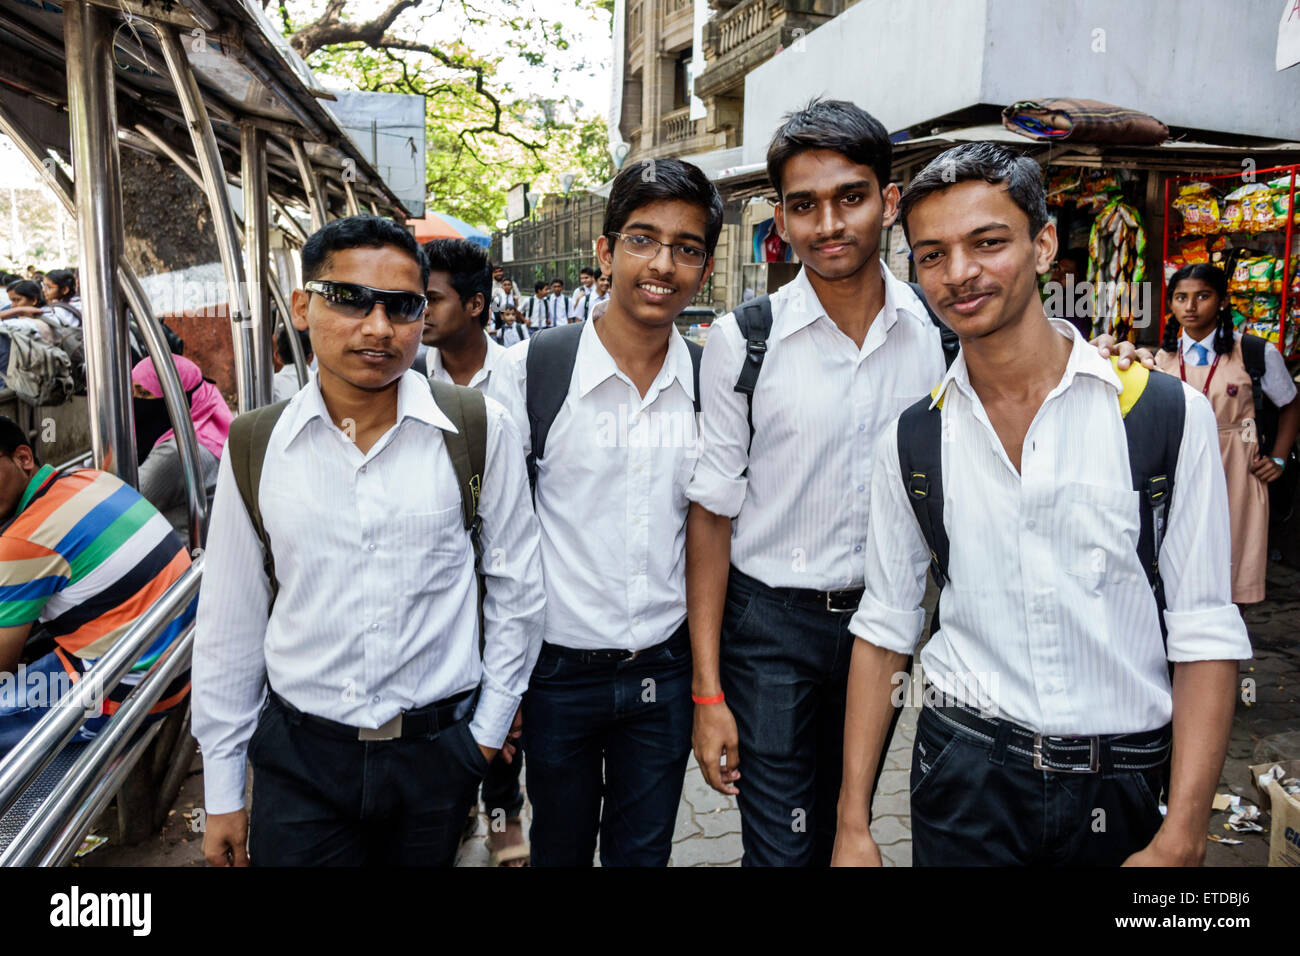 Mumbai India,Fort Mumbai,Mantralaya,Mahatma Gandhi Road,public bus stop,Elphinstone College,University of Mumbai,student students male boy boys kids c Stock Photo